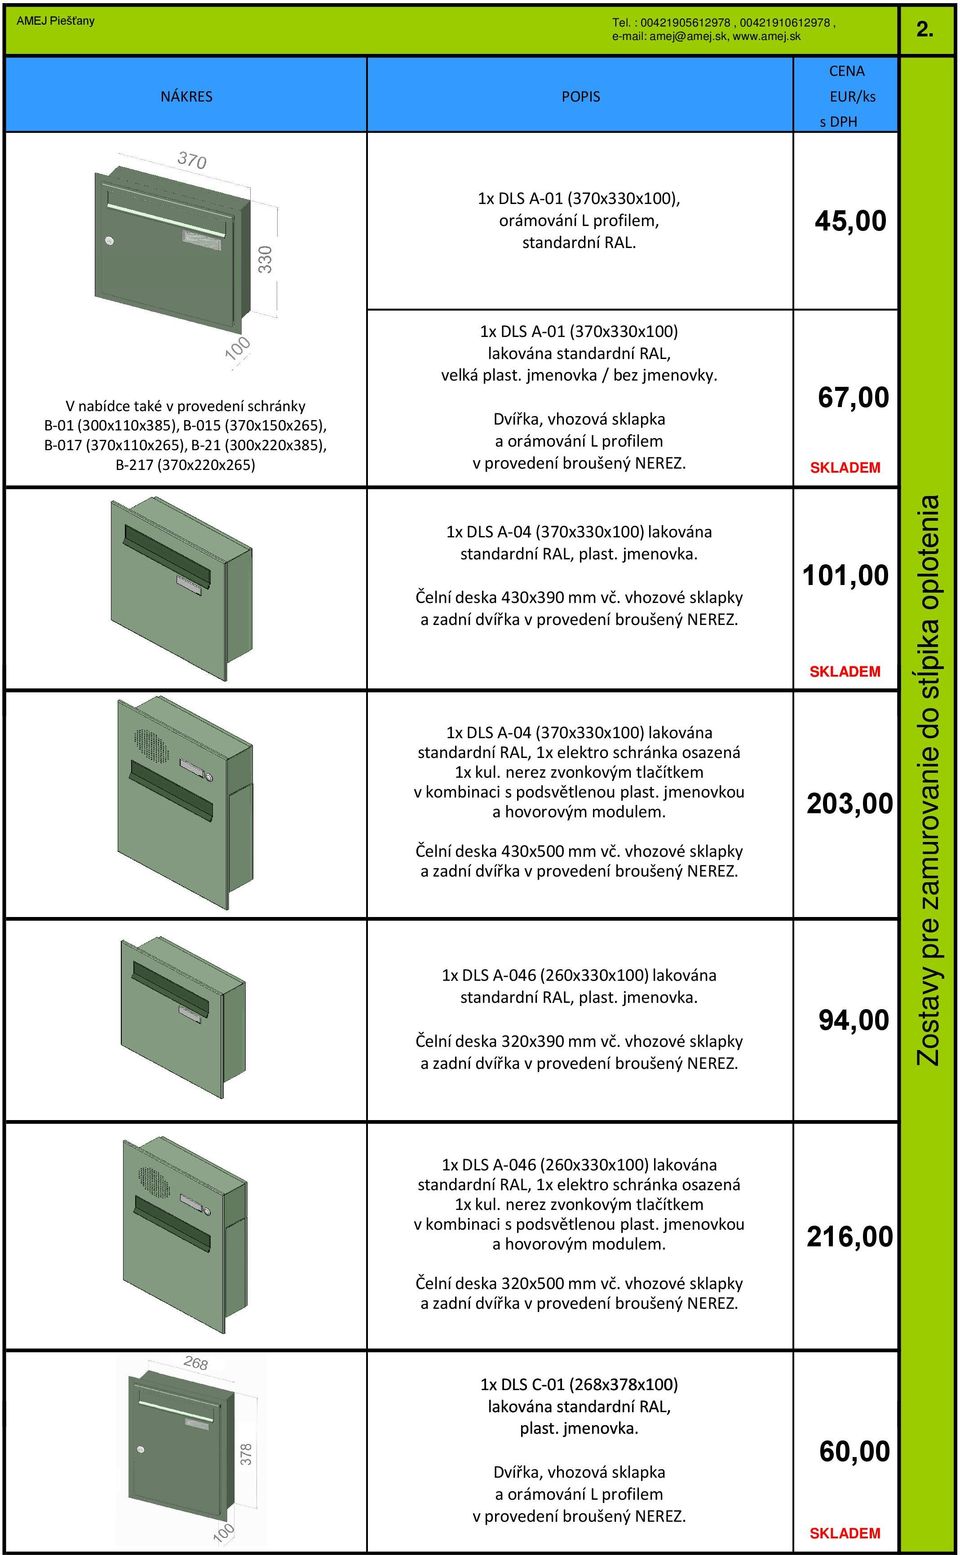 67,00 1x DLS A-04 (370x330x100) lakována Čelní deska 430x390 mm vč. vhozové sklapky 1x DLS A-04 (370x330x100)lakována standardní RAL, 1x elektro schránka osazená 1x kul.